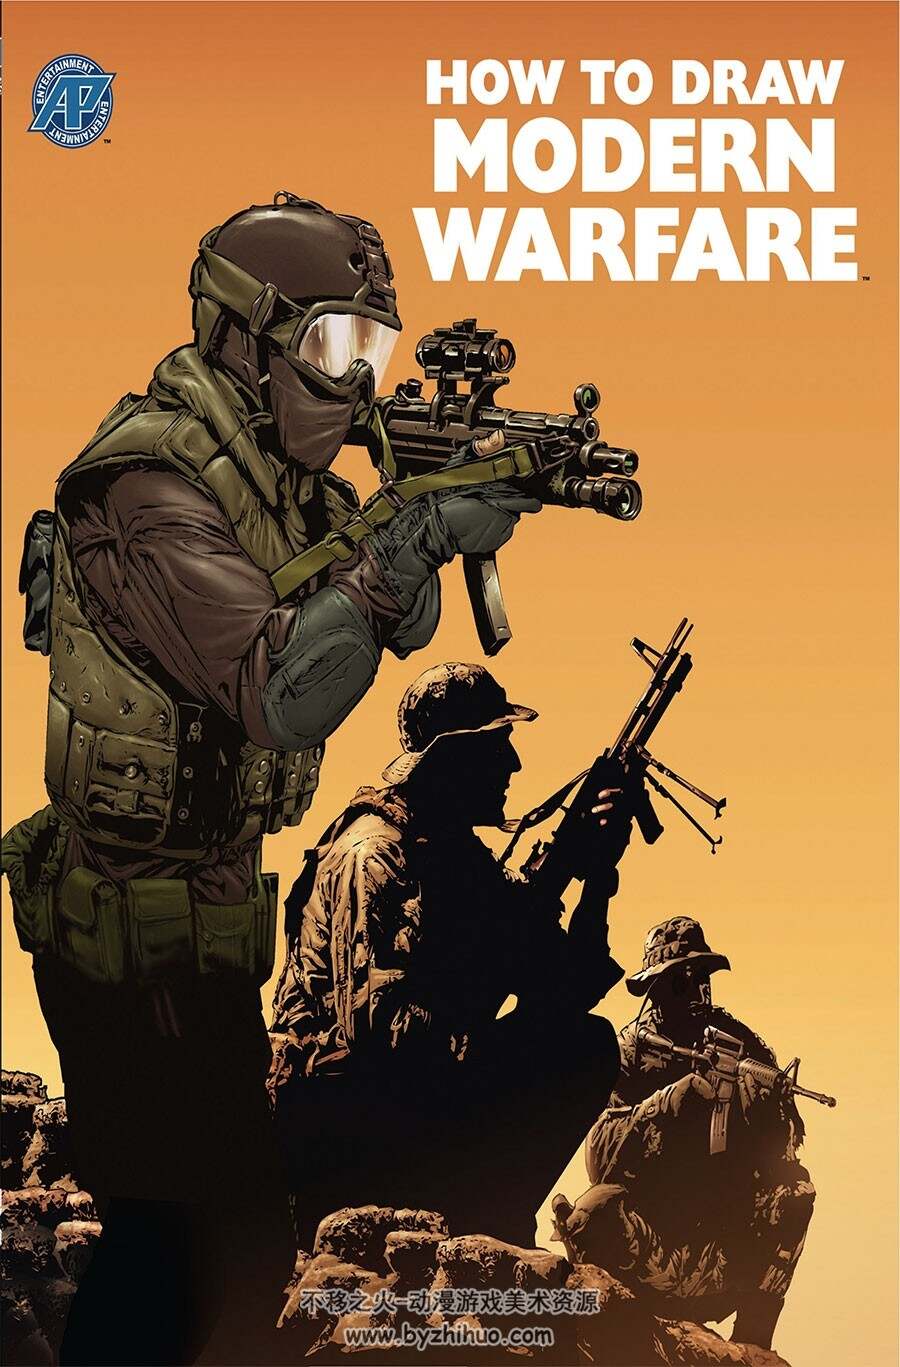 How to Draw Modern Warfare 绘制现代战争 Ben Dunn 武器载具绘画教学网盘下载